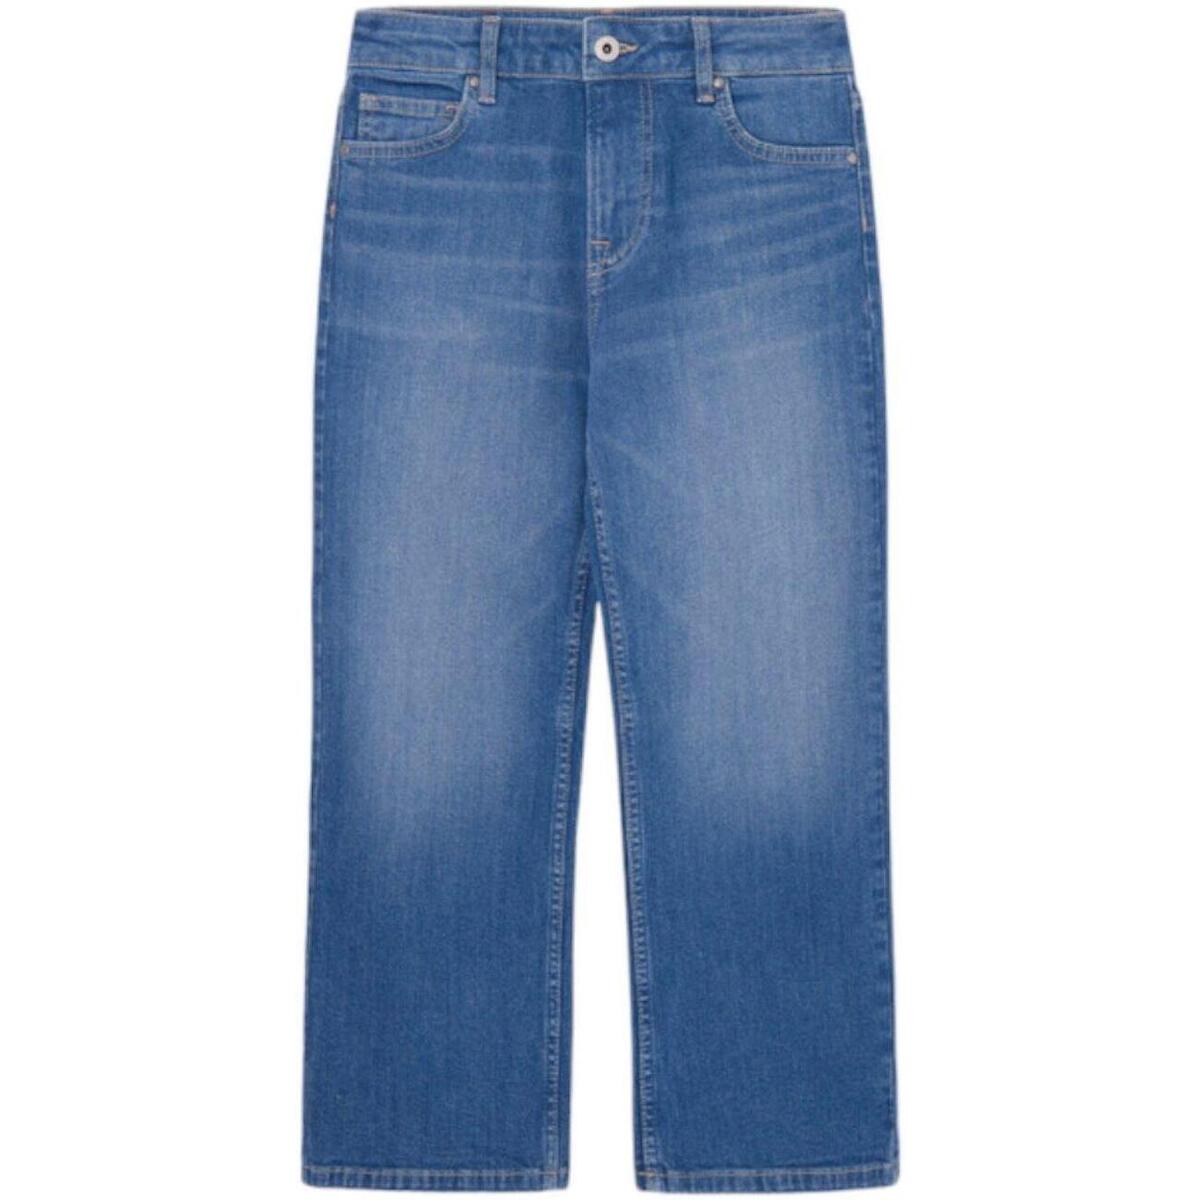 Vêtements Fille Jeans Pepe jeans  Bleu